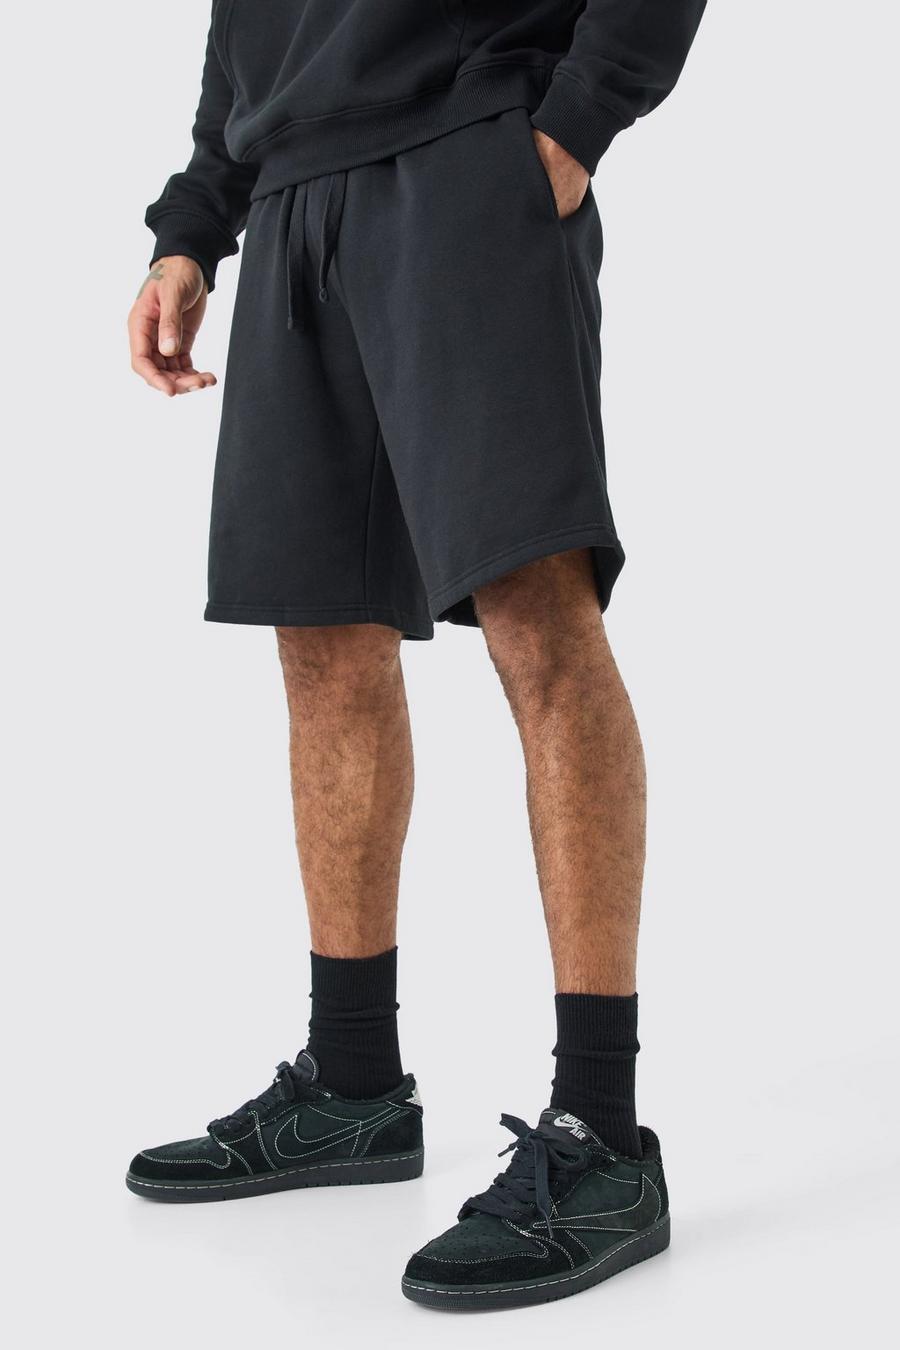 Black Oversized Fit Jersey Knit Short